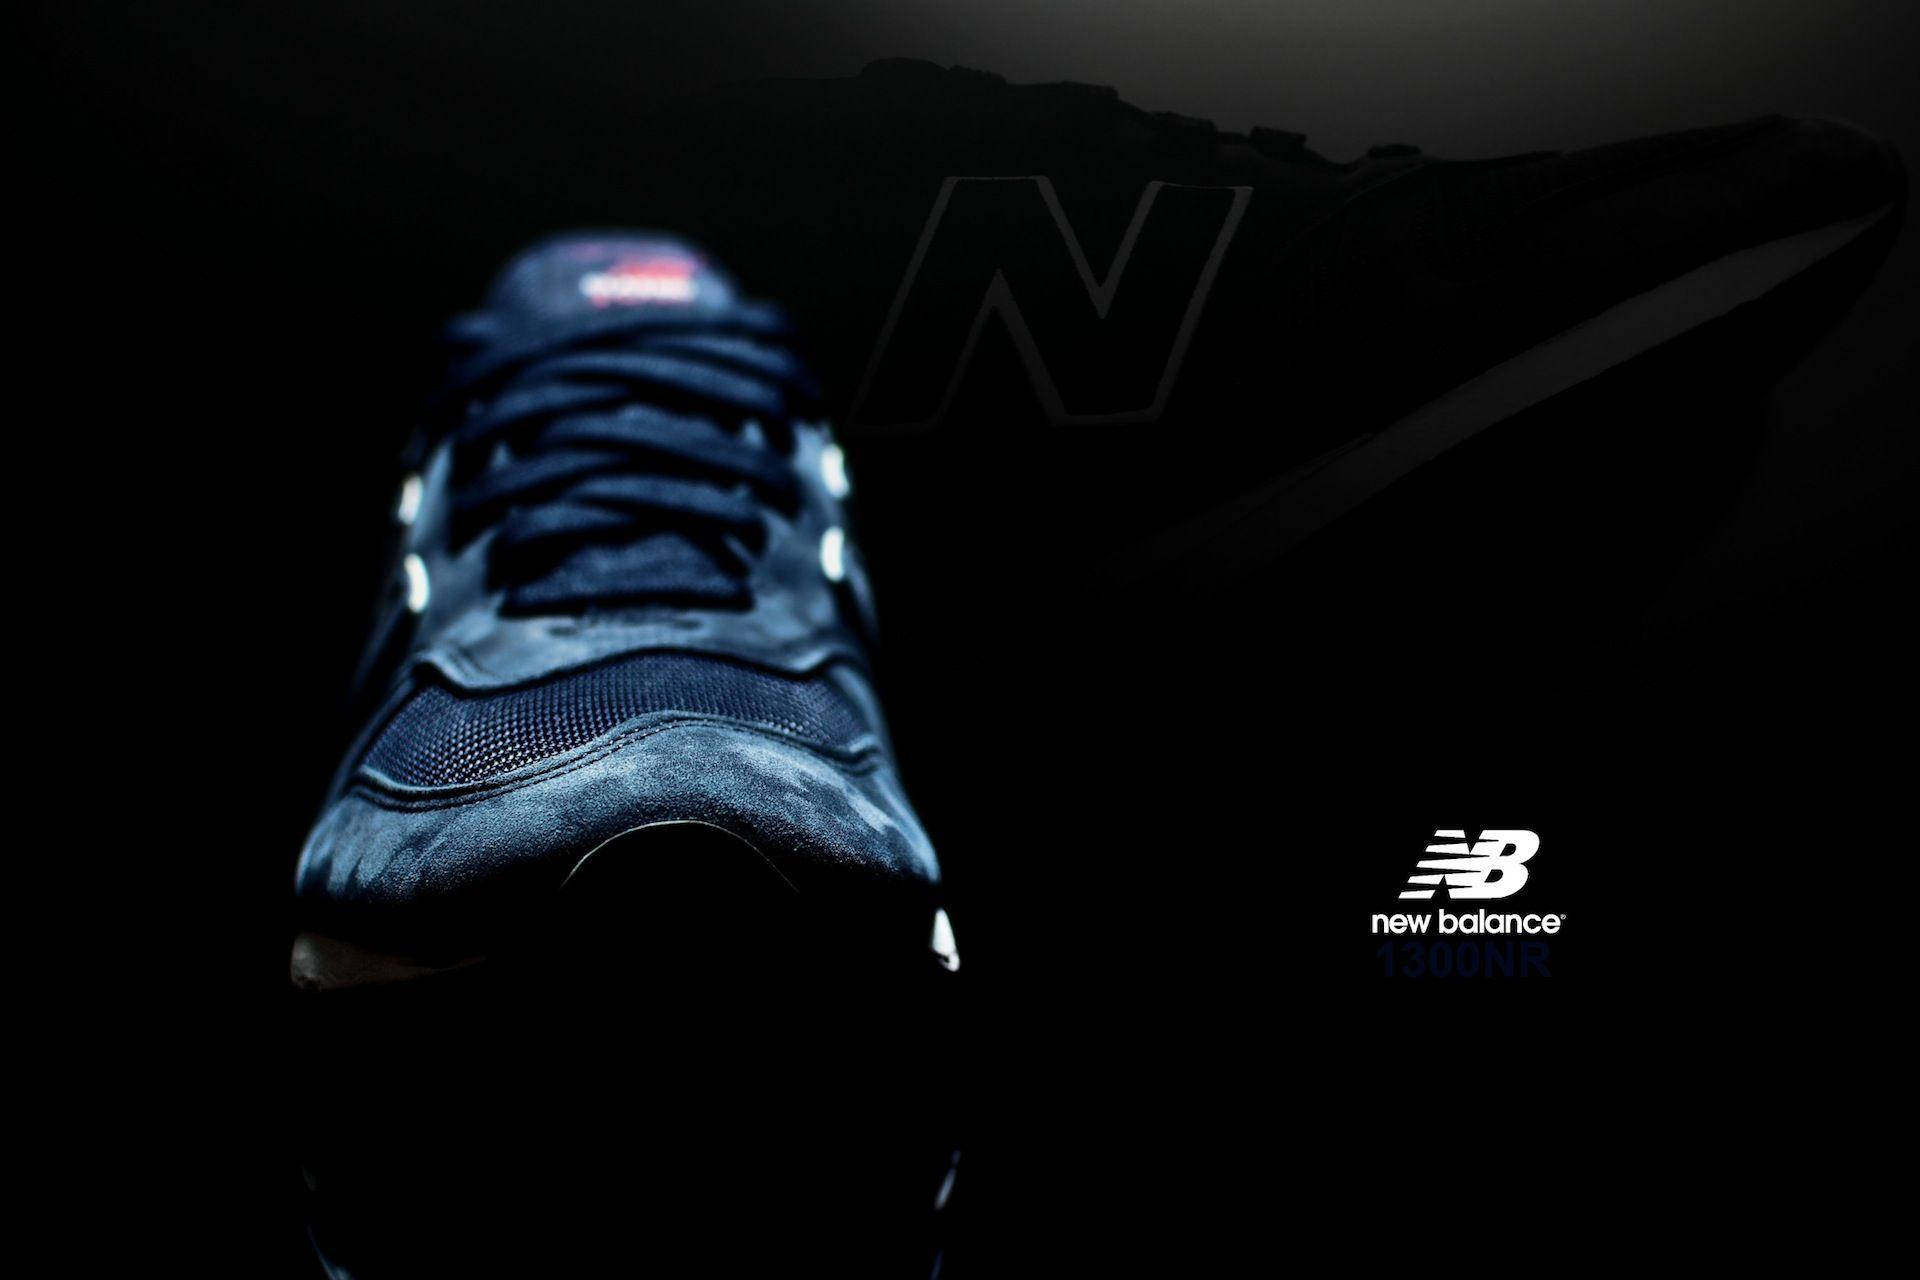 New Balance Shoe And Logo Background